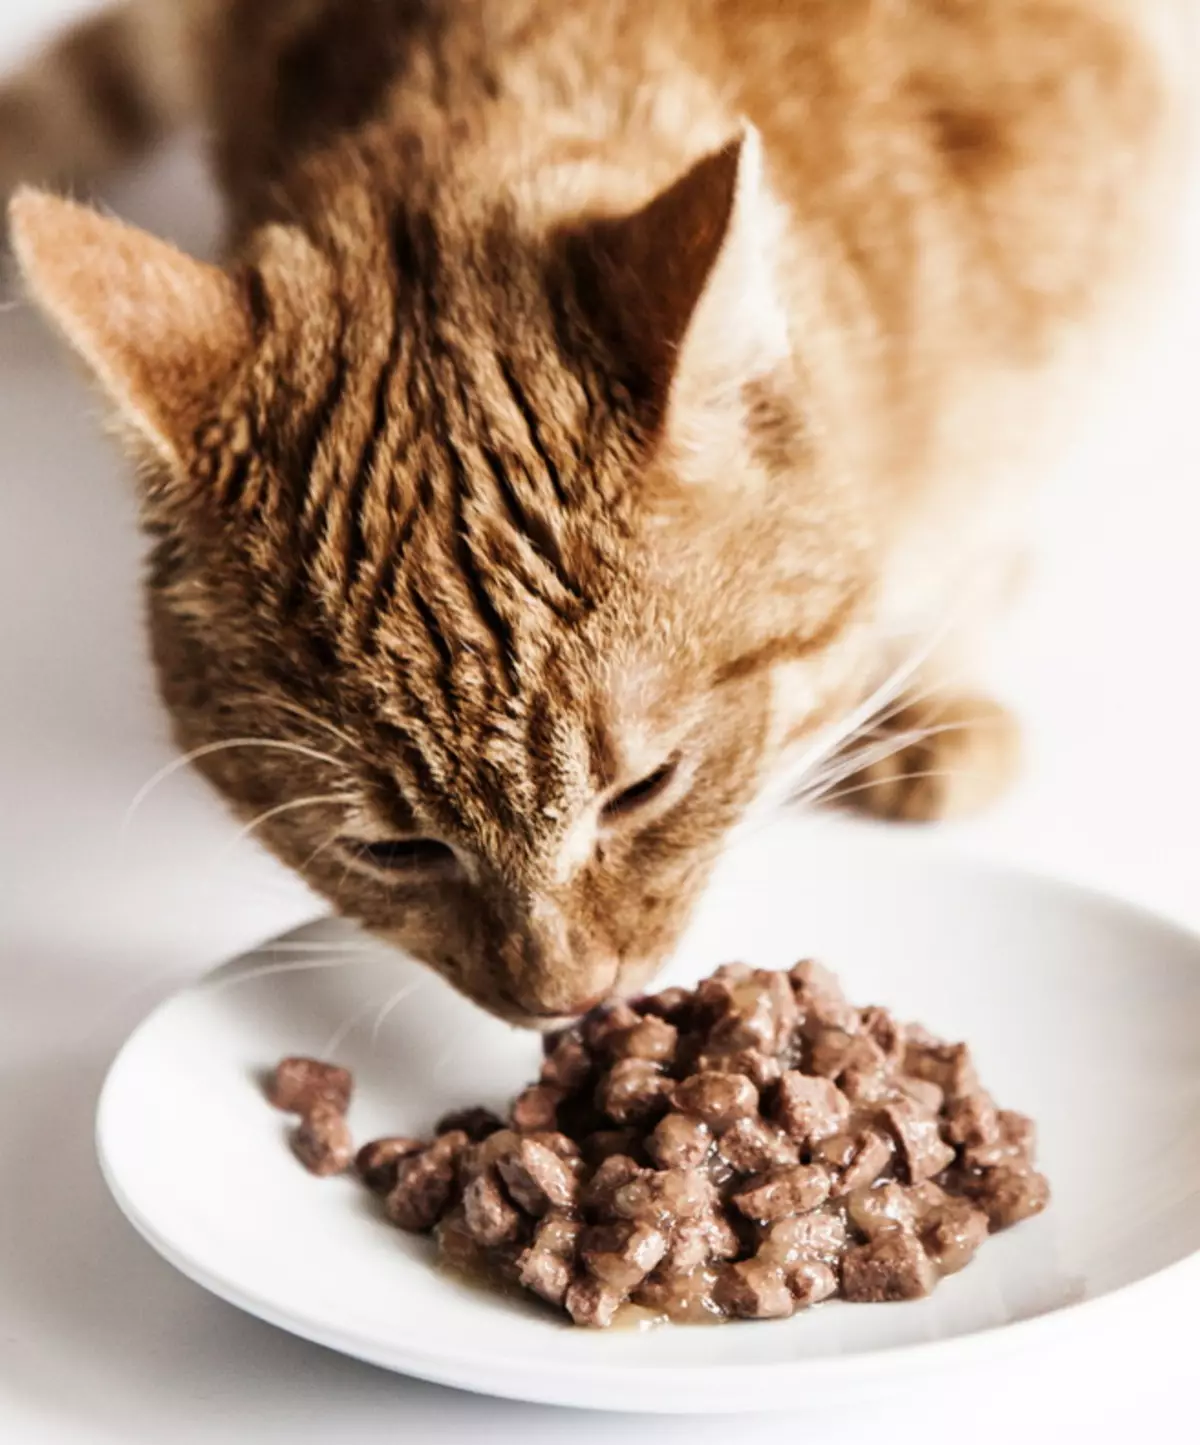 Υγρά τρόφιμα για γάτες Puriina Pro Σχέδιο: Puffy και κονσερβοποιημένα τρόφιμα με παπαγάλοι, συνθέσεις ζωοτροφών Nutrisavour ευαίσθητα, Nutrisavour αποστειρωμένα και άλλα 22658_10